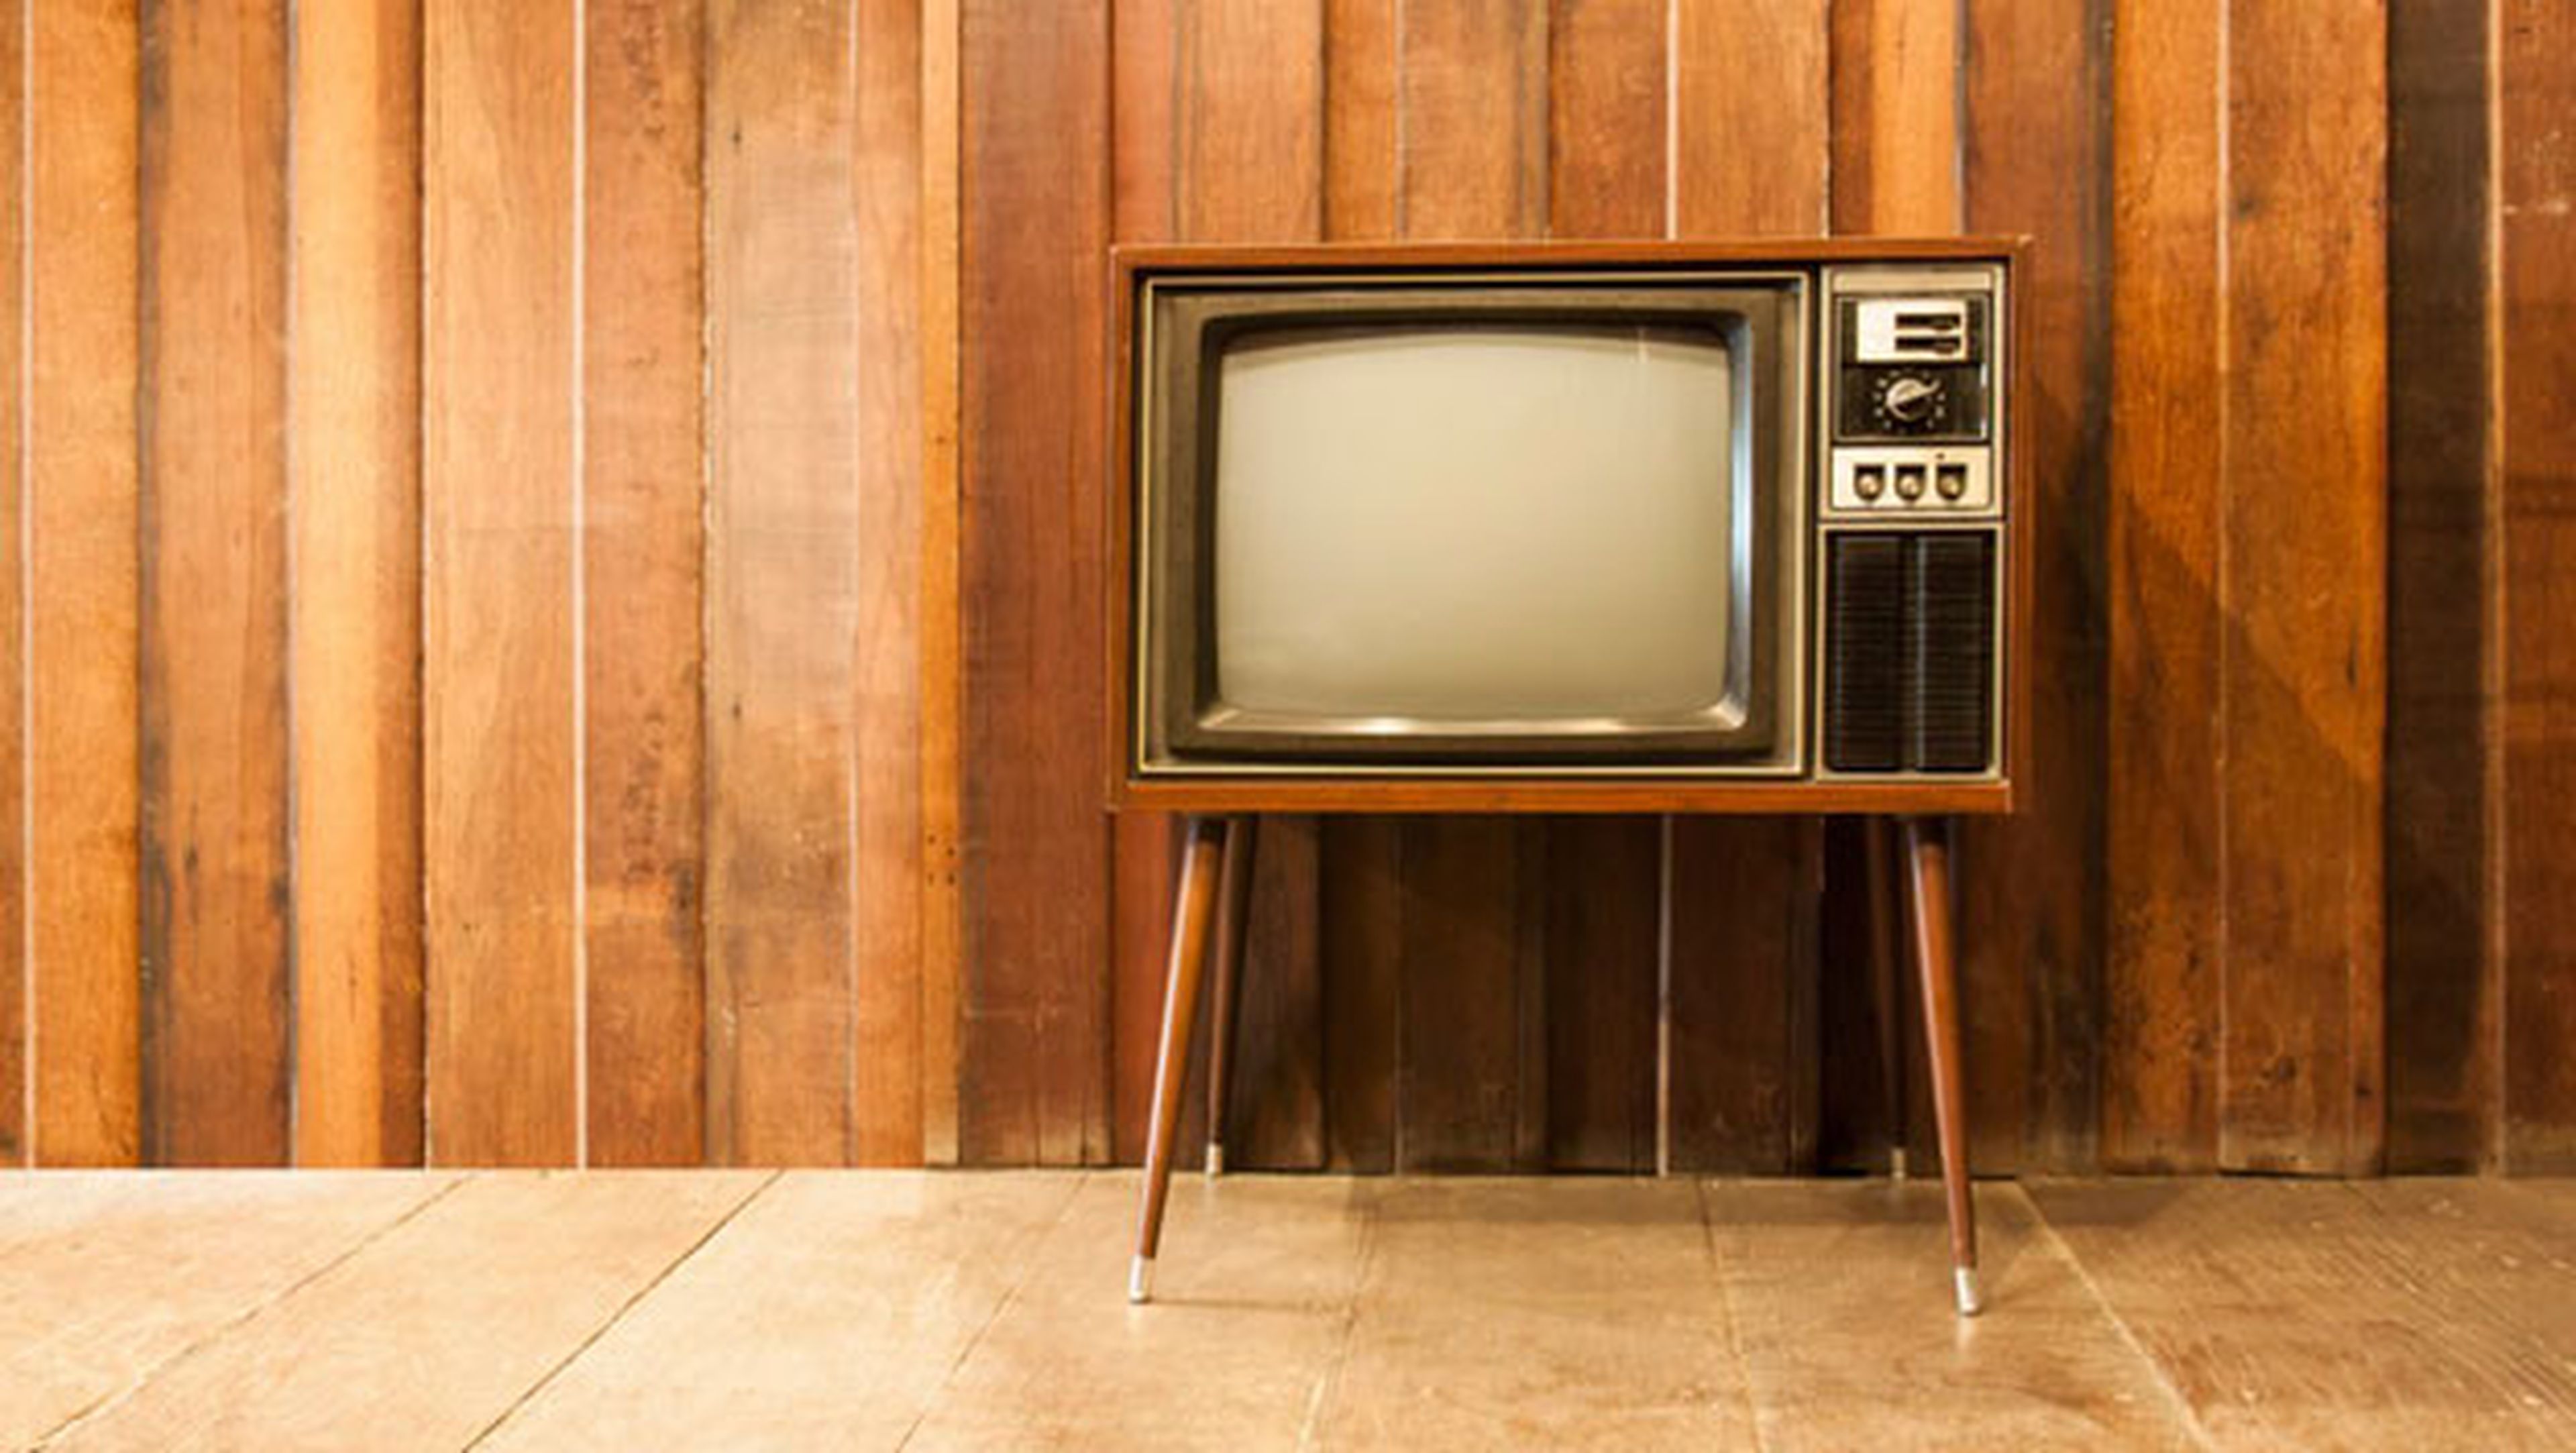 Cómo ver los canales HD en una televisión antigua